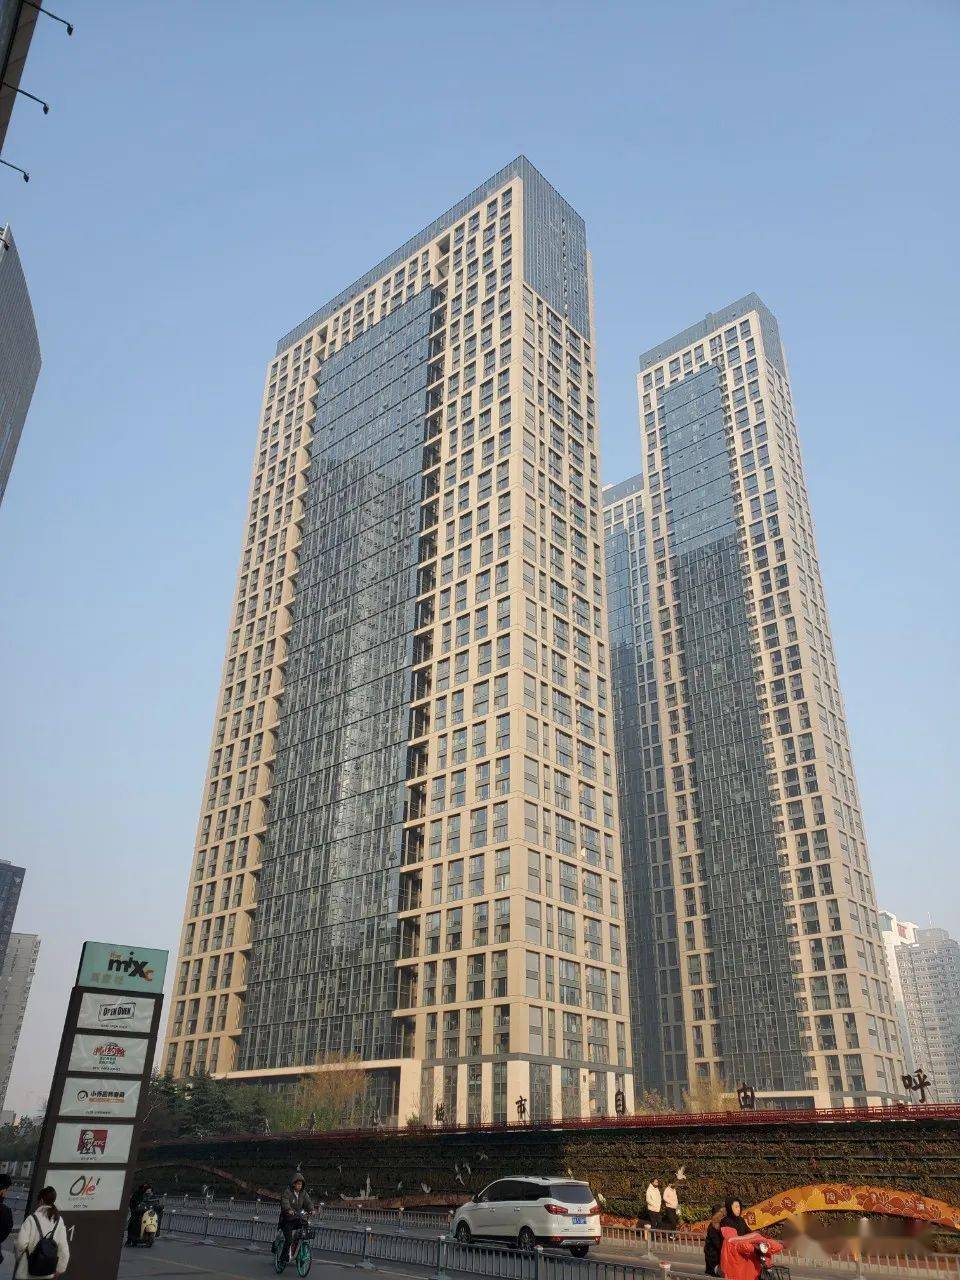 用地可以兼容二类住宅用地,也就是未来有机会建设成为类似于郑州二七